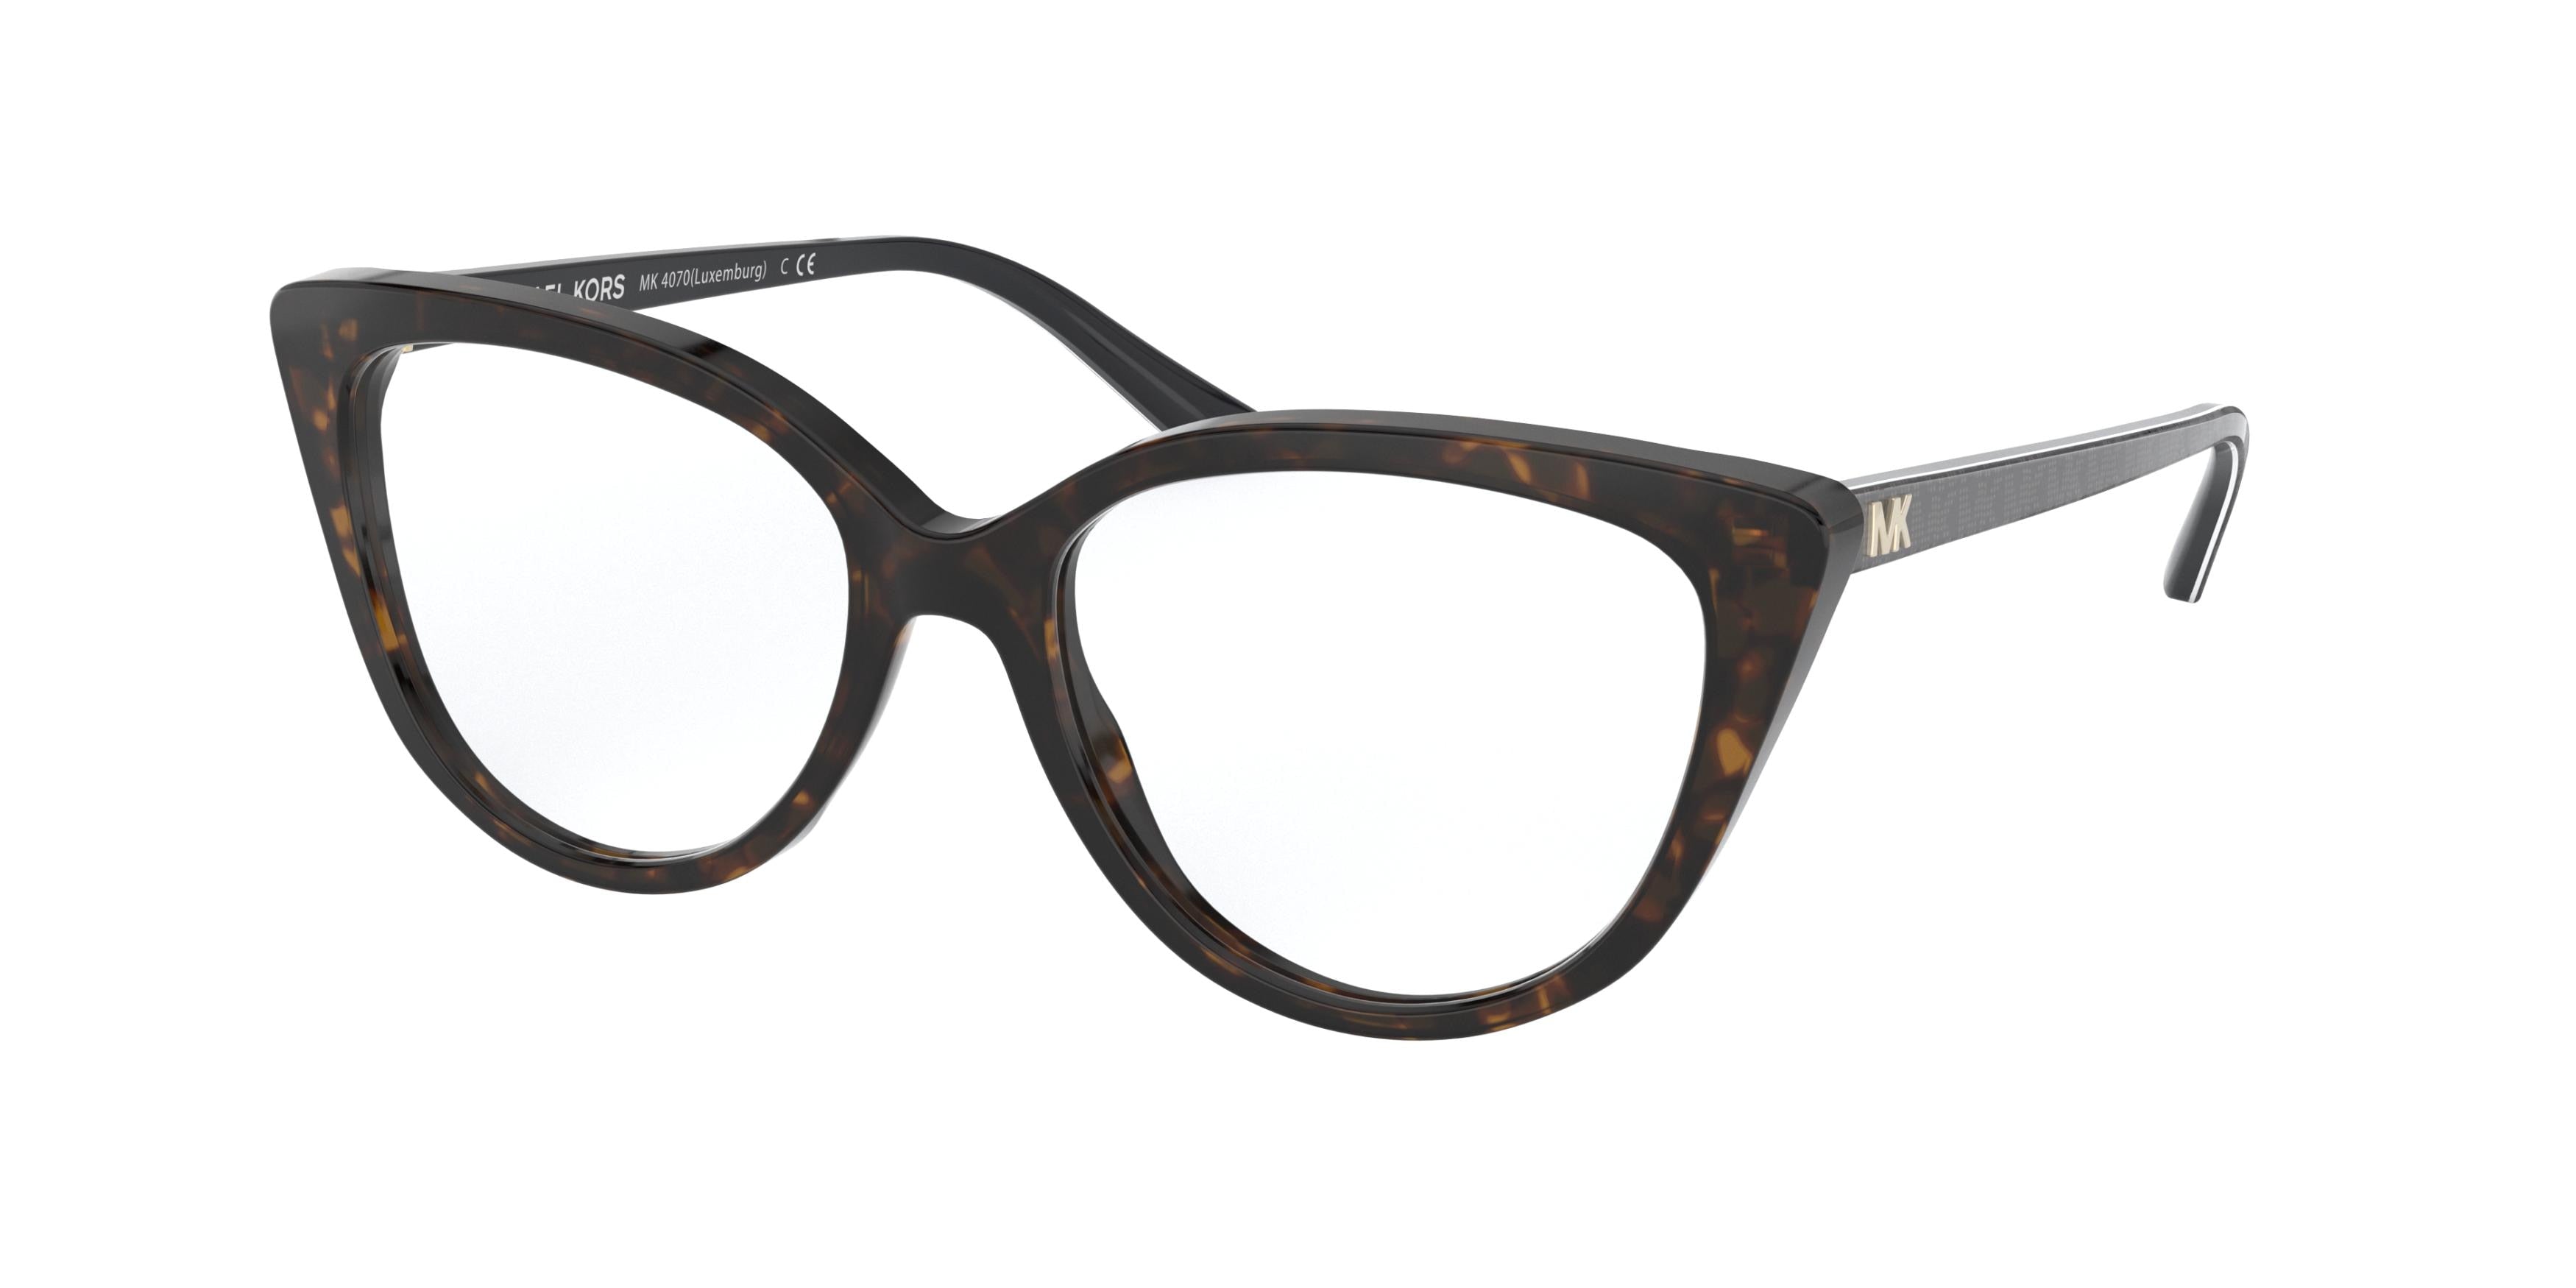 Michael Kors LUXEMBURG MK4070 Cat Eye Eyeglasses  3006-Dark Tortoise 54-140-17 - Color Map Tortoise